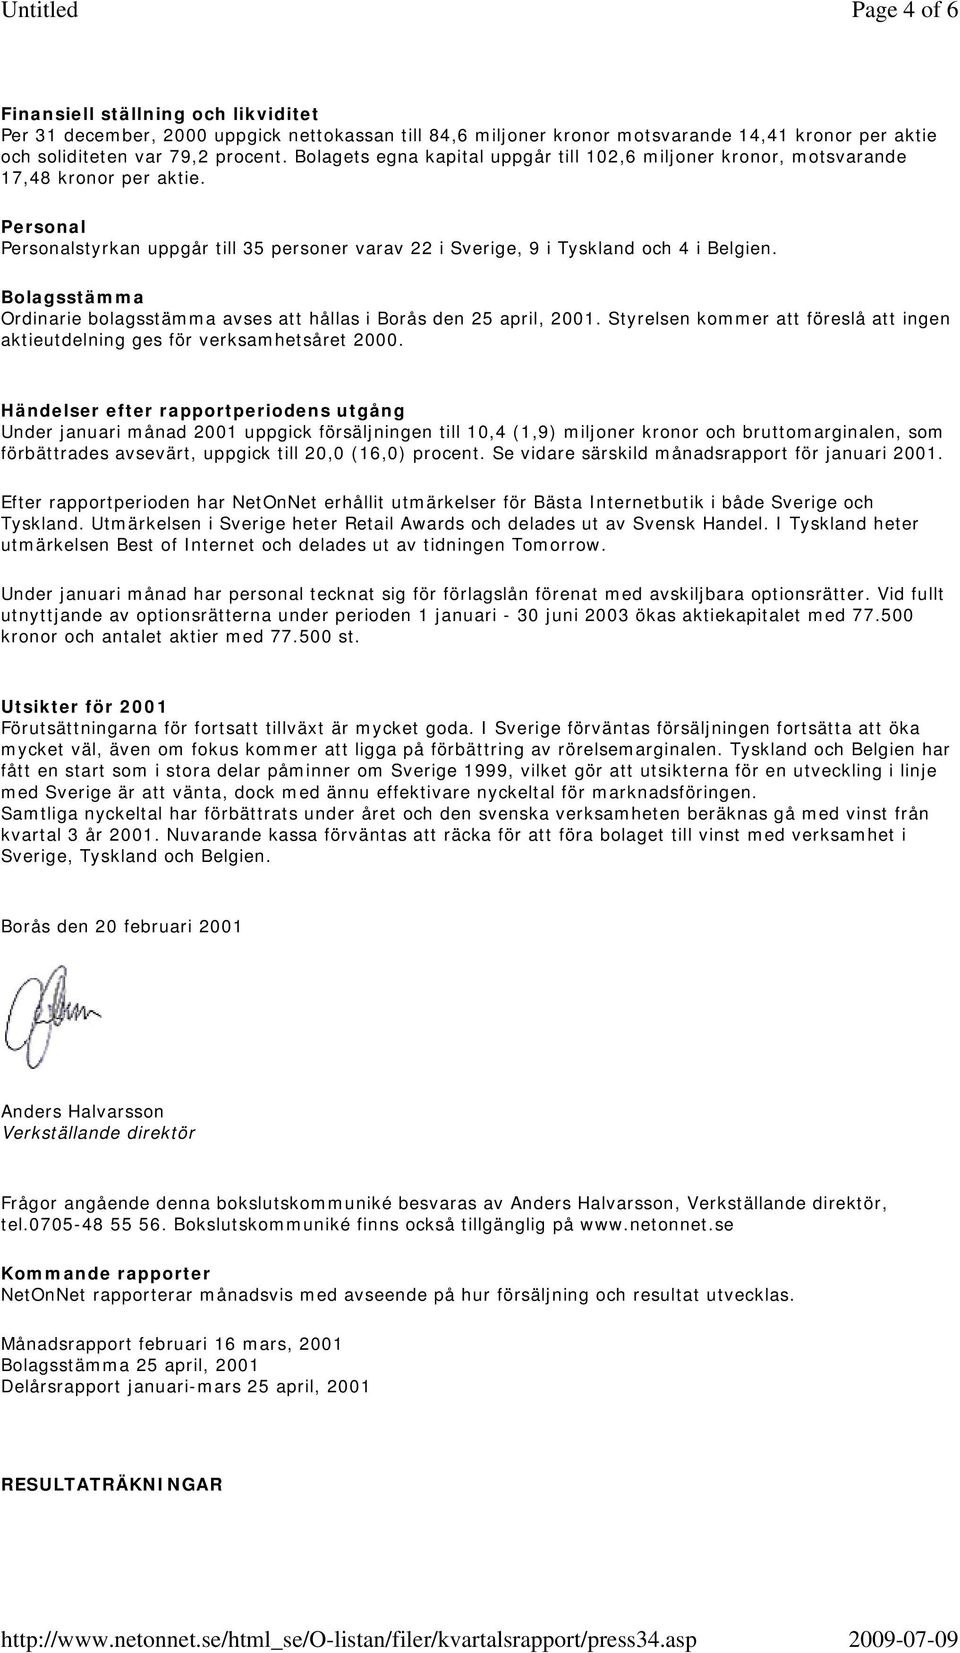 Bolagsstämma Ordinarie bolagsstämma avses att hållas i Borås den 25 april, 2001. Styrelsen kommer att föreslå att ingen aktieutdelning ges för verksamhetsåret.